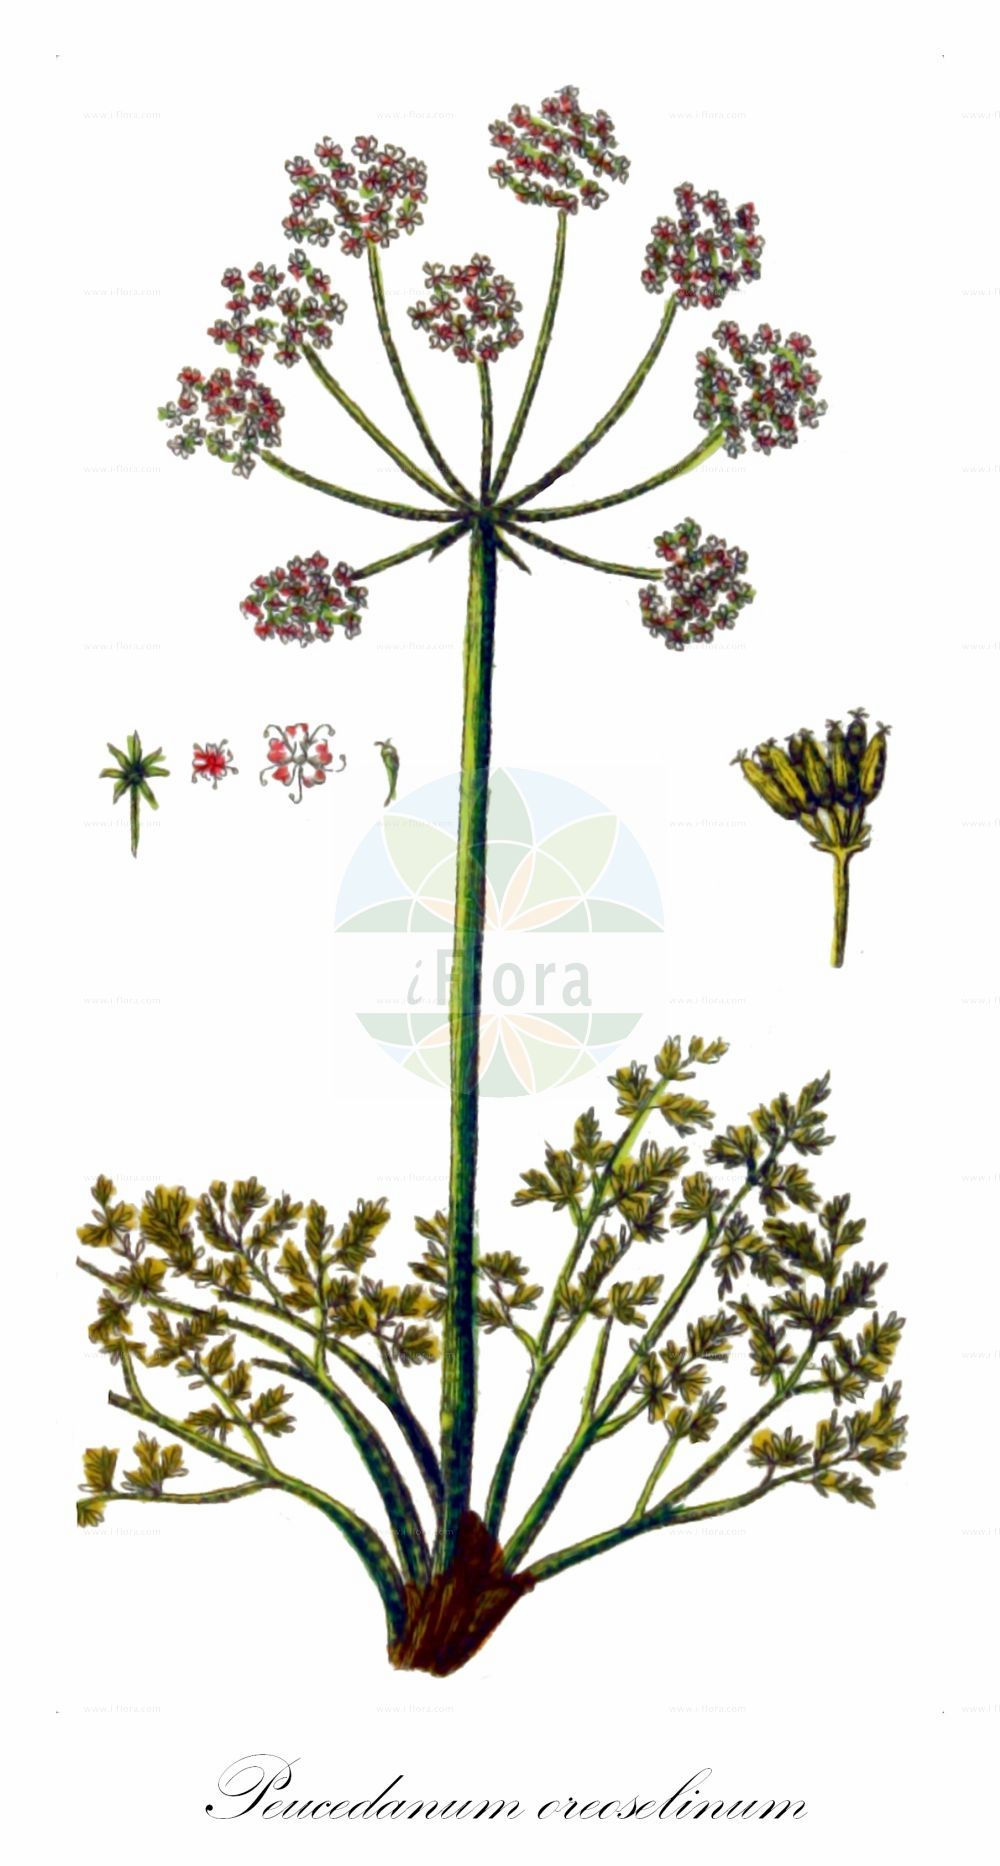 Historische Abbildung von Peucedanum oreoselinum (Berg-Haarstrang - Mountain Parsley). Das Bild zeigt Blatt, Bluete, Frucht und Same. ---- Historical Drawing of Peucedanum oreoselinum (Berg-Haarstrang - Mountain Parsley). The image is showing leaf, flower, fruit and seed.(Peucedanum oreoselinum,Berg-Haarstrang,Mountain Parsley,Athamanta oreoselinum,Oreoselinum nigrum,Peucedanum bourgaei,Peucedanum oreoselinum,Berg-Haarstrang,Mountain Parsley,Peucedanum,Haarstrang,Hog's Fennel,Apiaceae,Doldengewächse,Carrot family,Blatt,Bluete,Frucht,Same,leaf,flower,fruit,seed,Zorn (1781f))